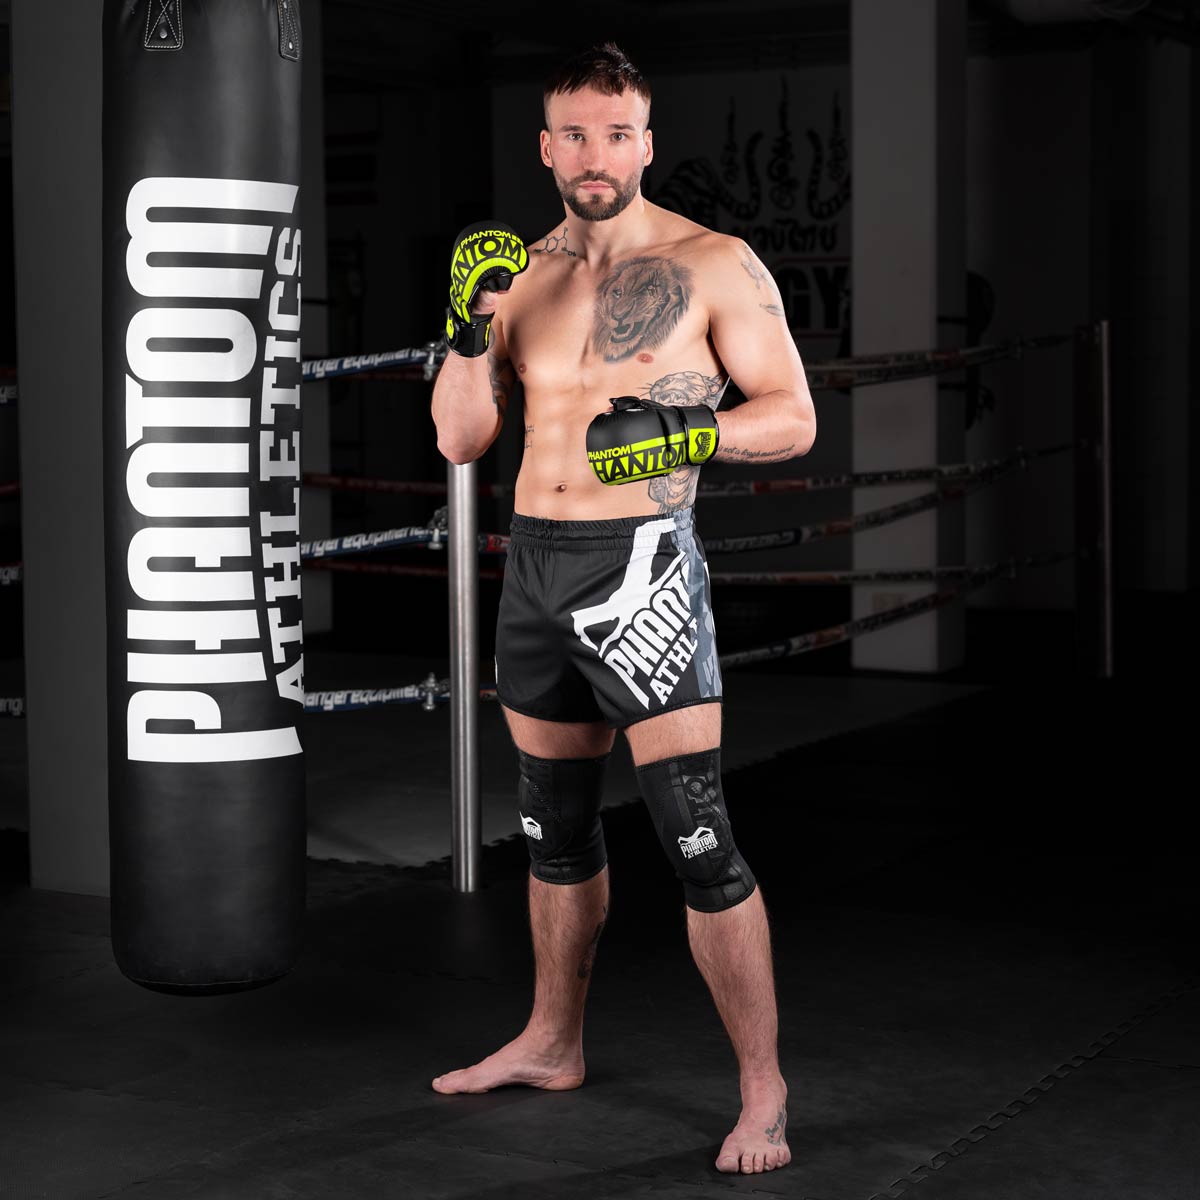 Fight Profi im Gym mit den Phantom Apex MMA Sparringshandschuhen vorm Sandsack Training